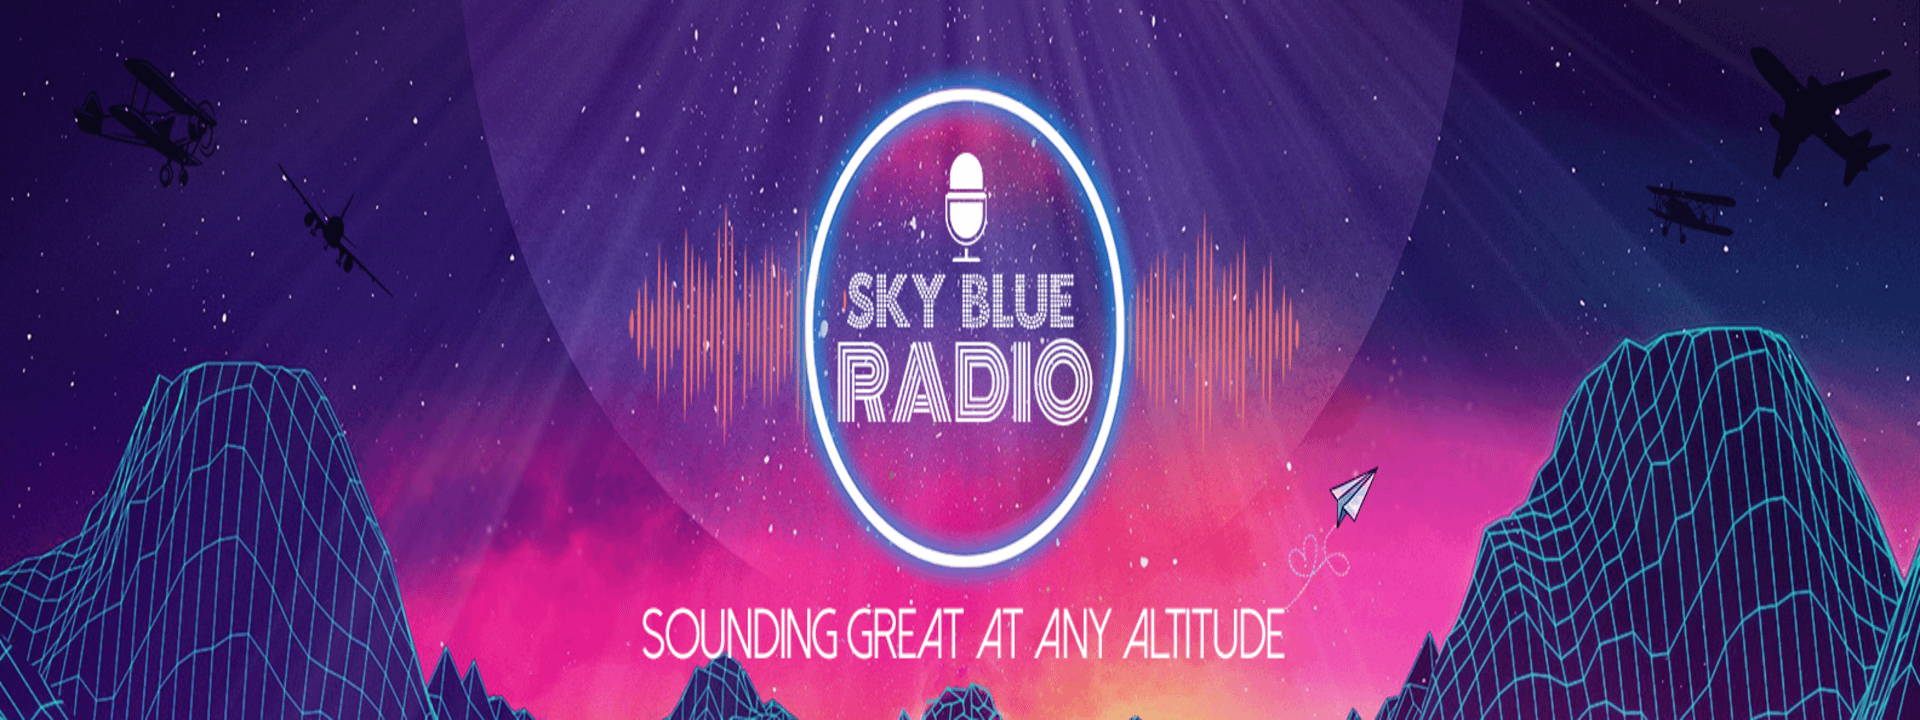 KSBR – Sky Blue Radio